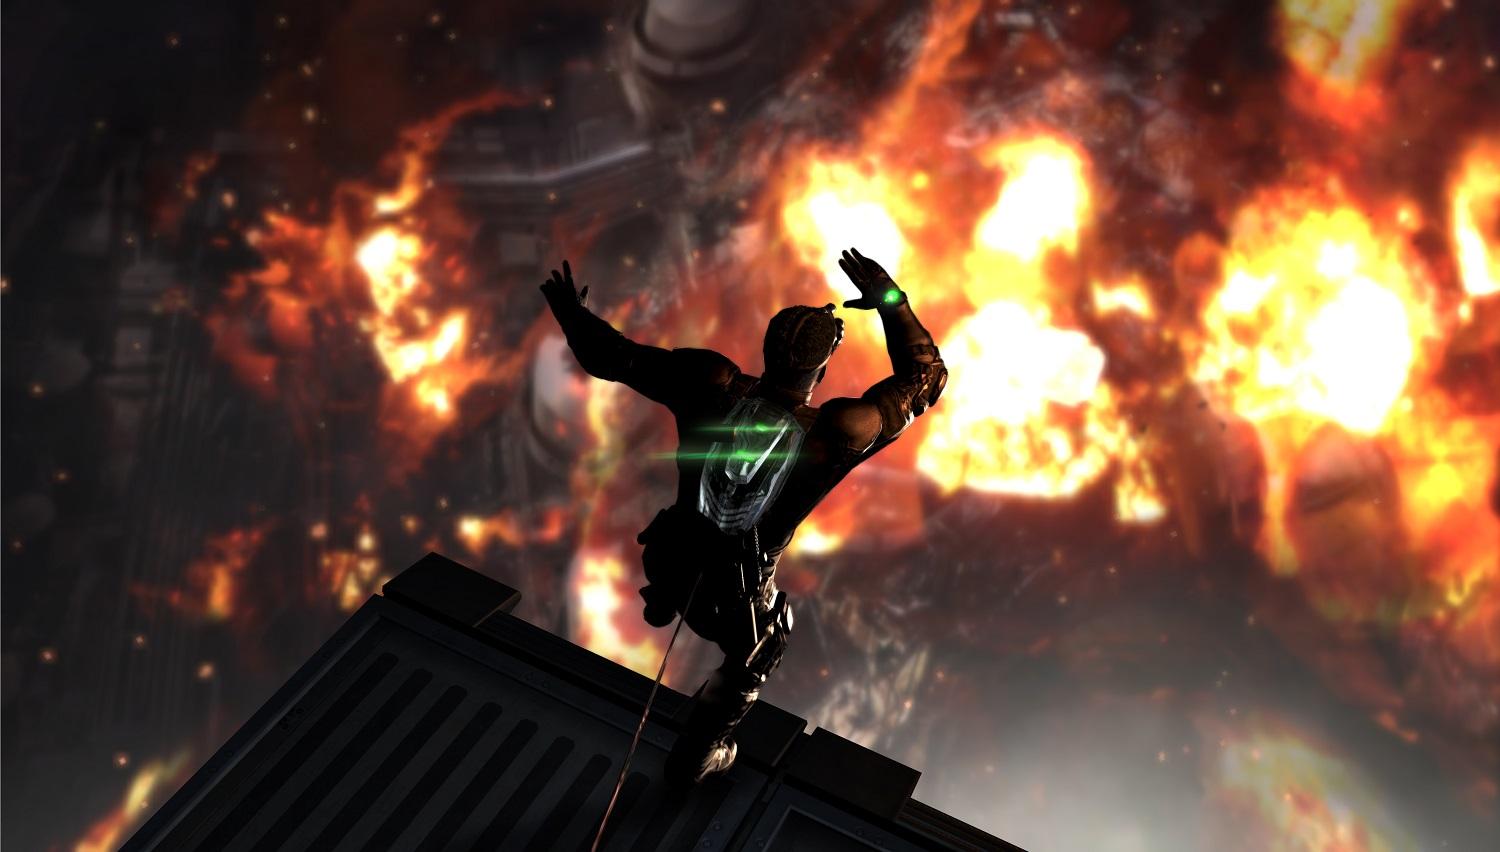 Splinter Cell Blacklist for PS3: Stalk. Strike. Silence 